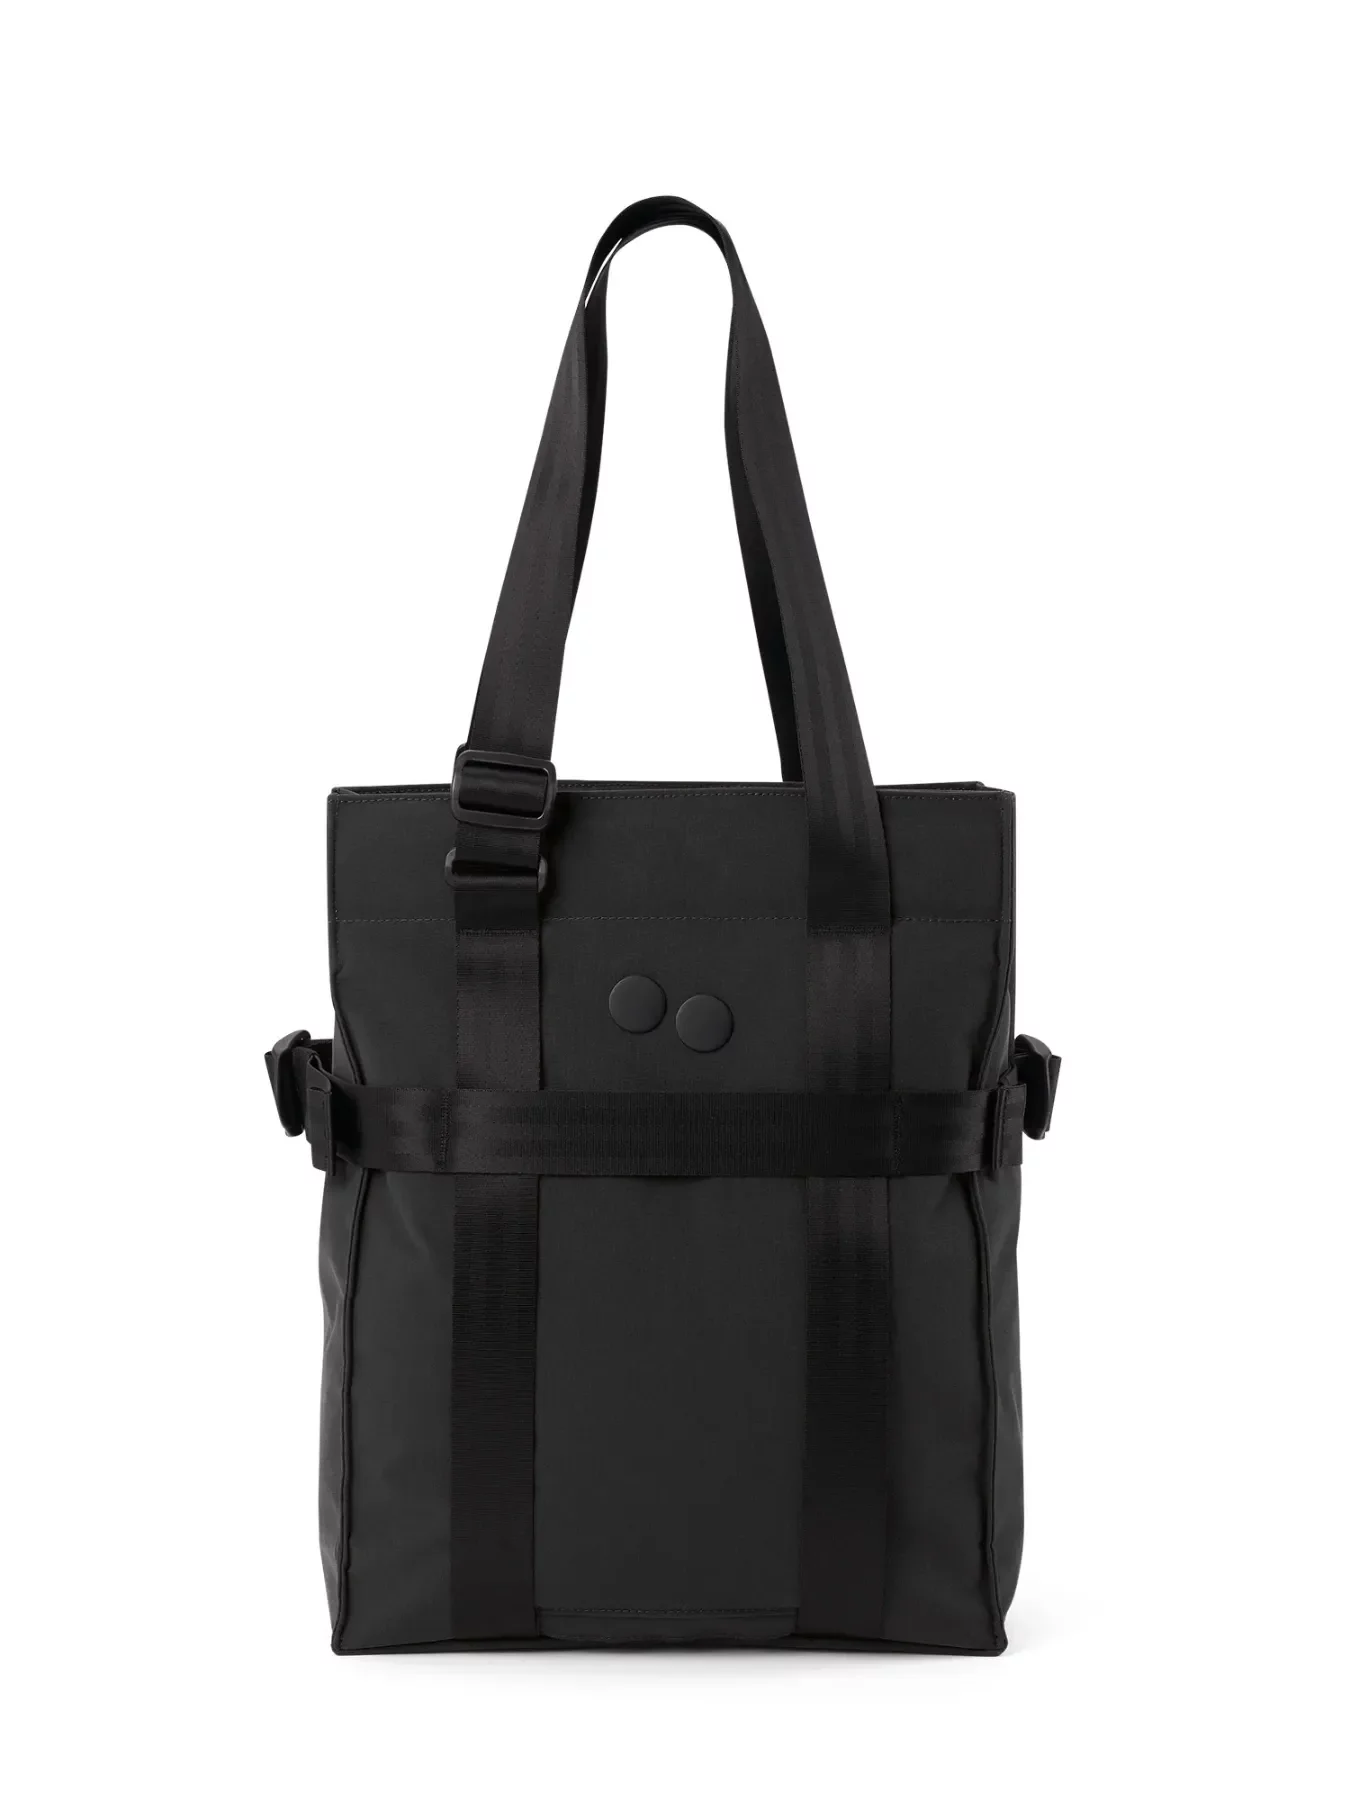 pinqponq Backpack PENDIK TB - Solid Black